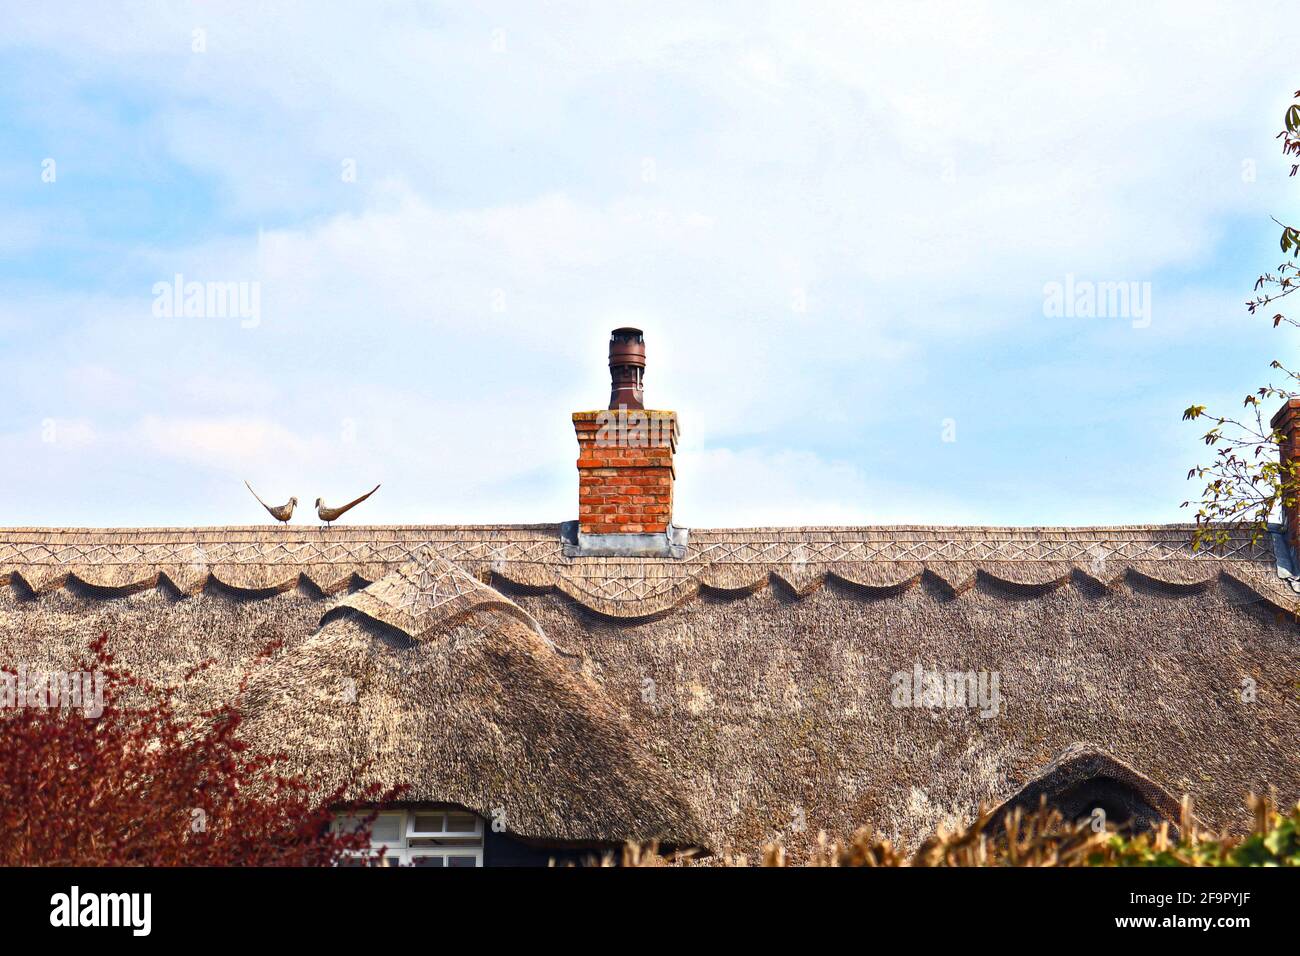 Tradicional y encantador techo de paja con motivos decorativos y faisanes de paja. Arquitectura rural y rural británica. Inglaterra, Reino Unido. Foto de stock